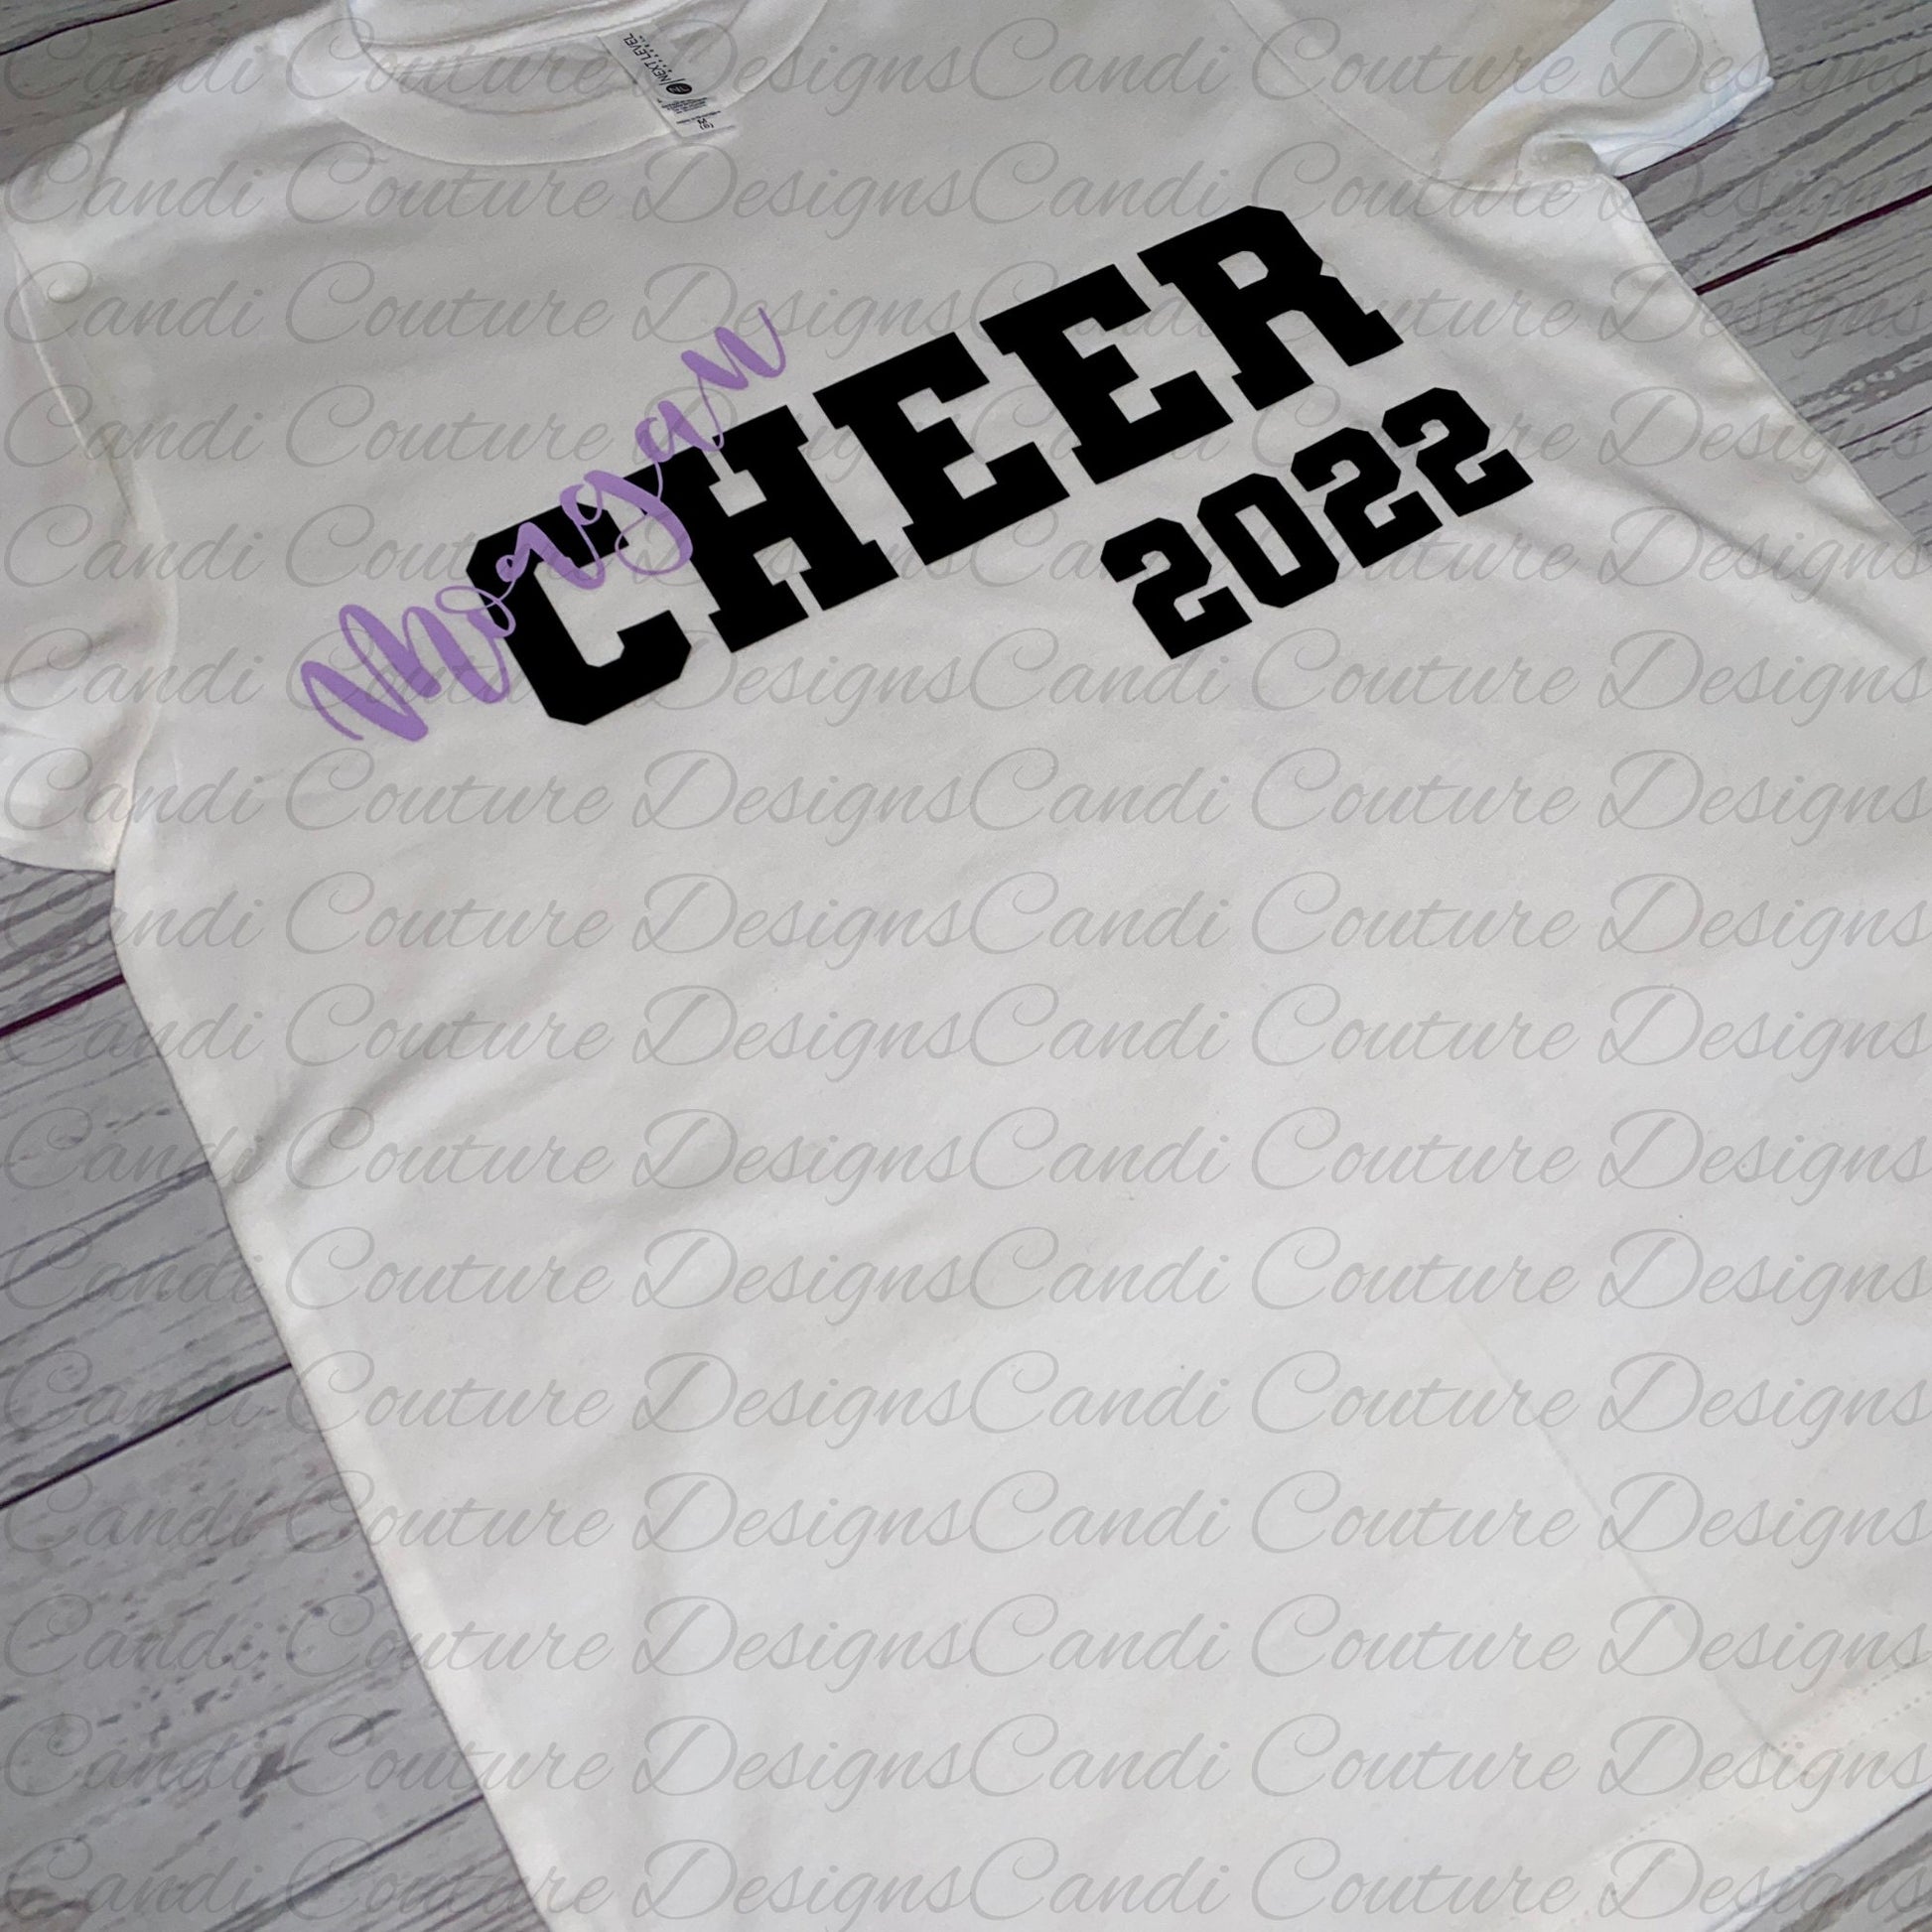 Cheer Team Shirt, Dance Shirt with Personalization, Cheer Team Shirts for Spirit Wear, Custom Cheerleader Shirt, Cheerleading Gift